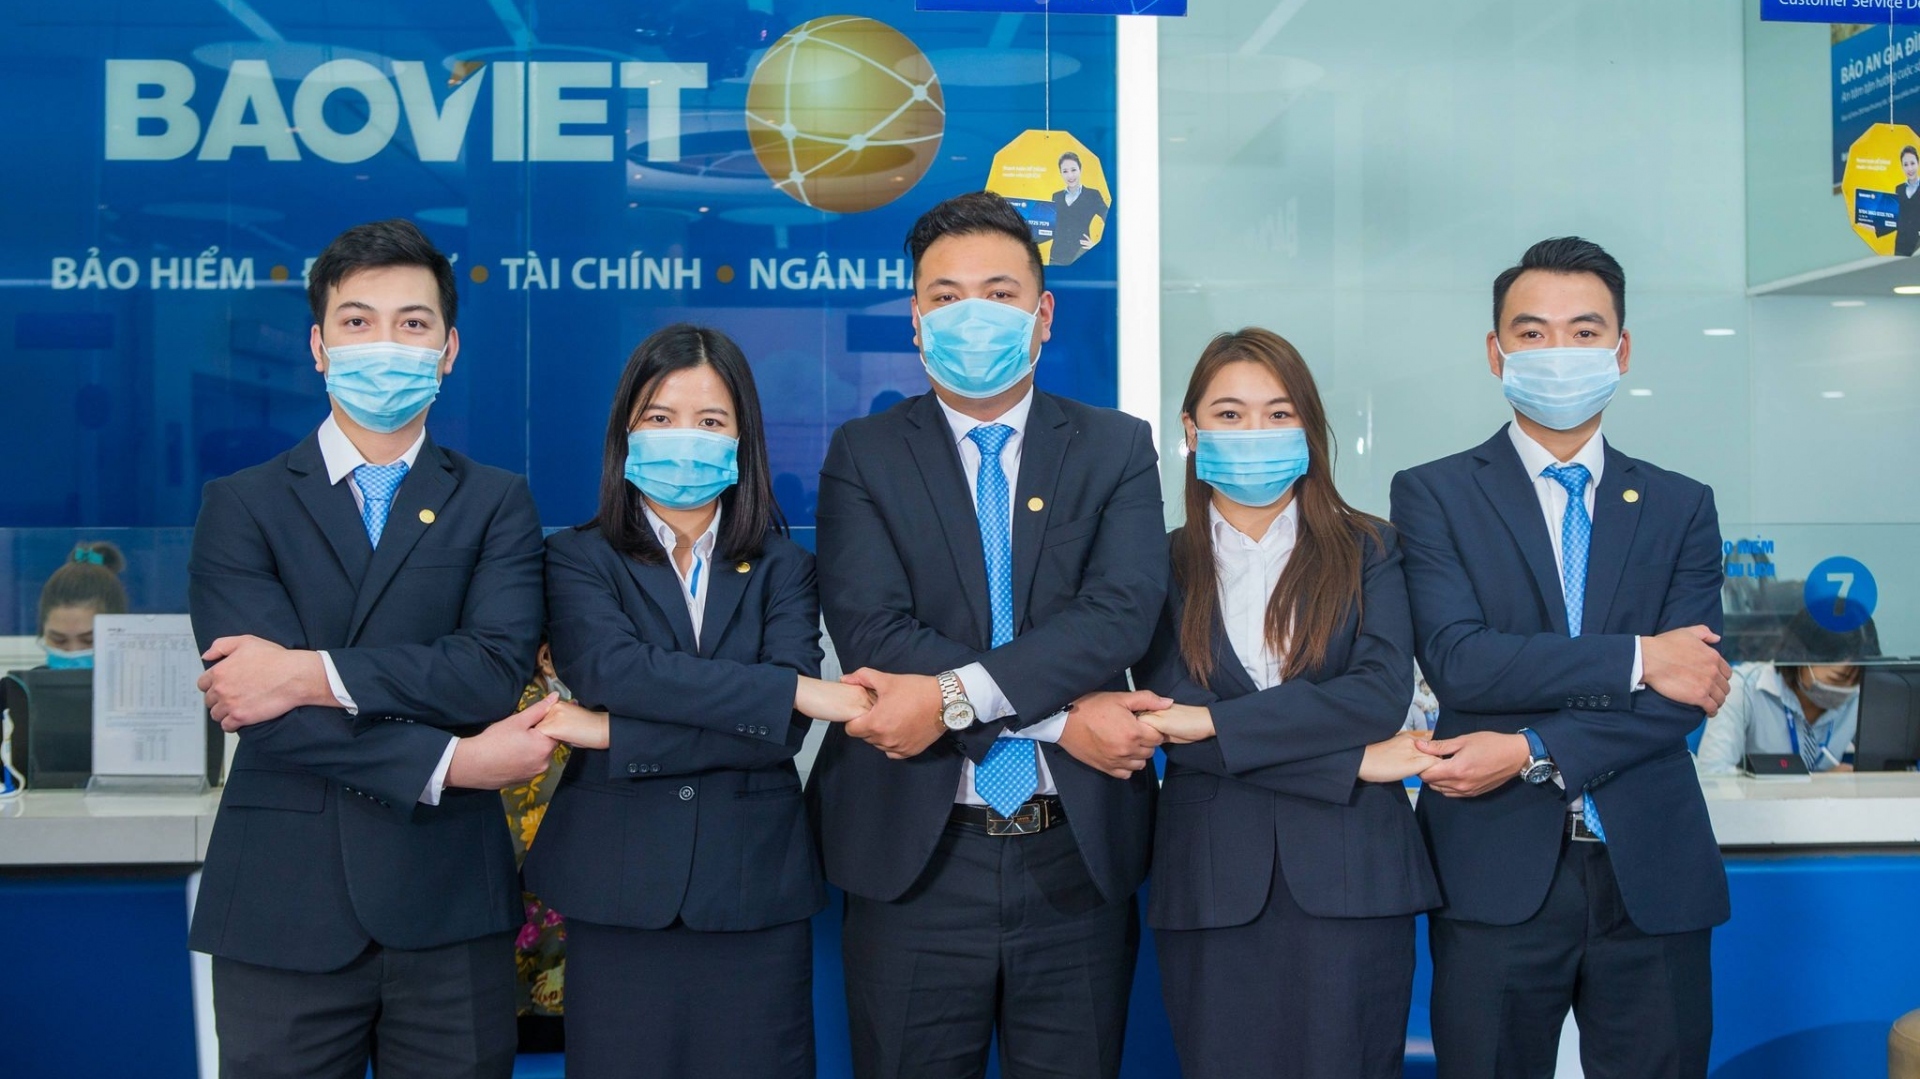 6 tháng đầu năm, Tập đoàn Bảo Việt vượt 1 tỷ USD doanh thu